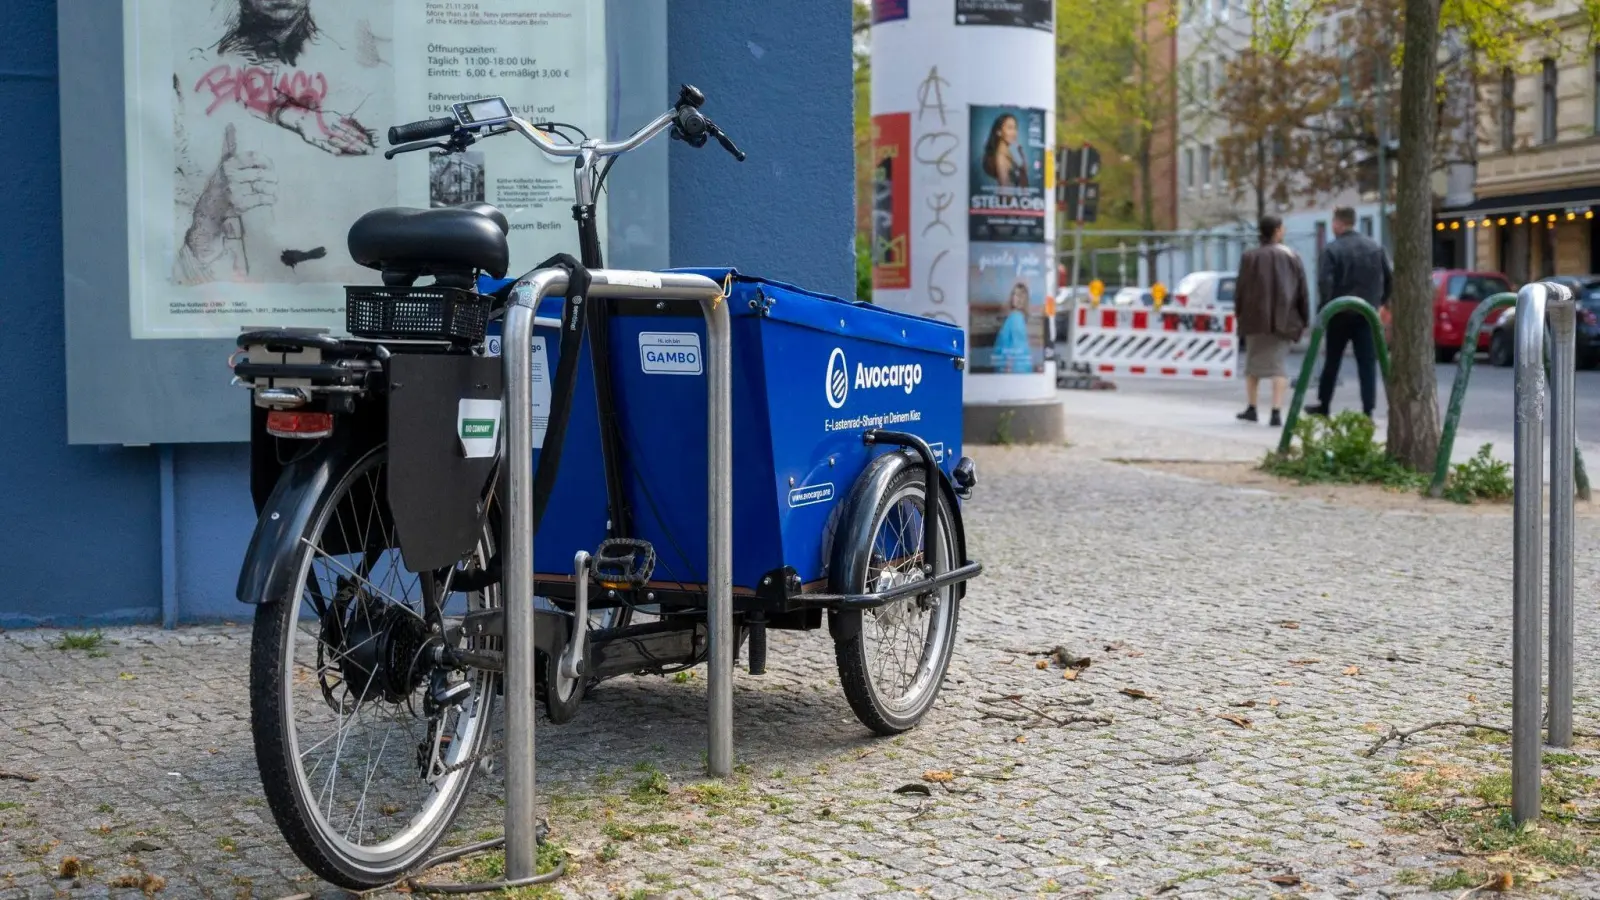 2021 wurde das Start-up Avocargo gegründet. Inzwischen verleiht es 200 E-Lastenräder in Berlin. Bald soll es Angebote in weiteren Städten geben. (Foto: Christophe Gateau/dpa)